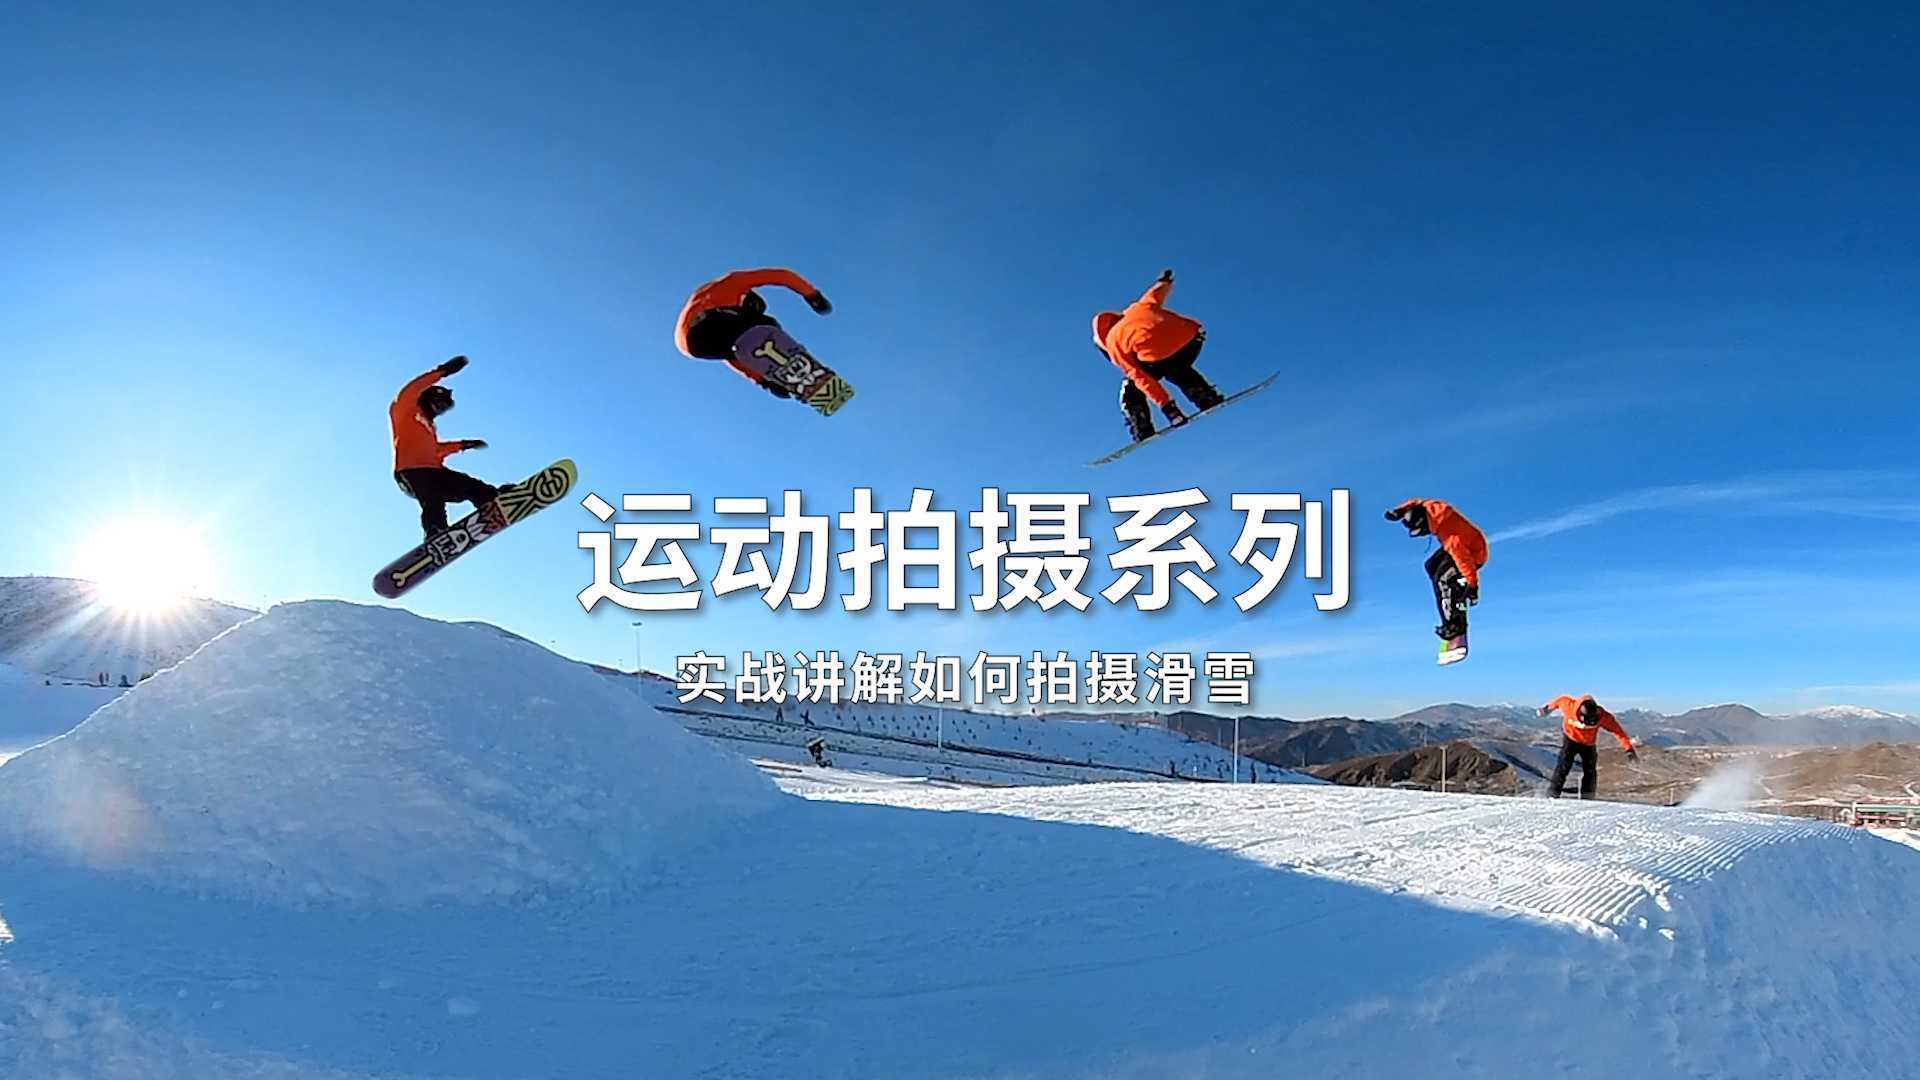 拍摄滑雪干货分享！ 运动拍摄系列——实战讲解如何拍摄滑雪